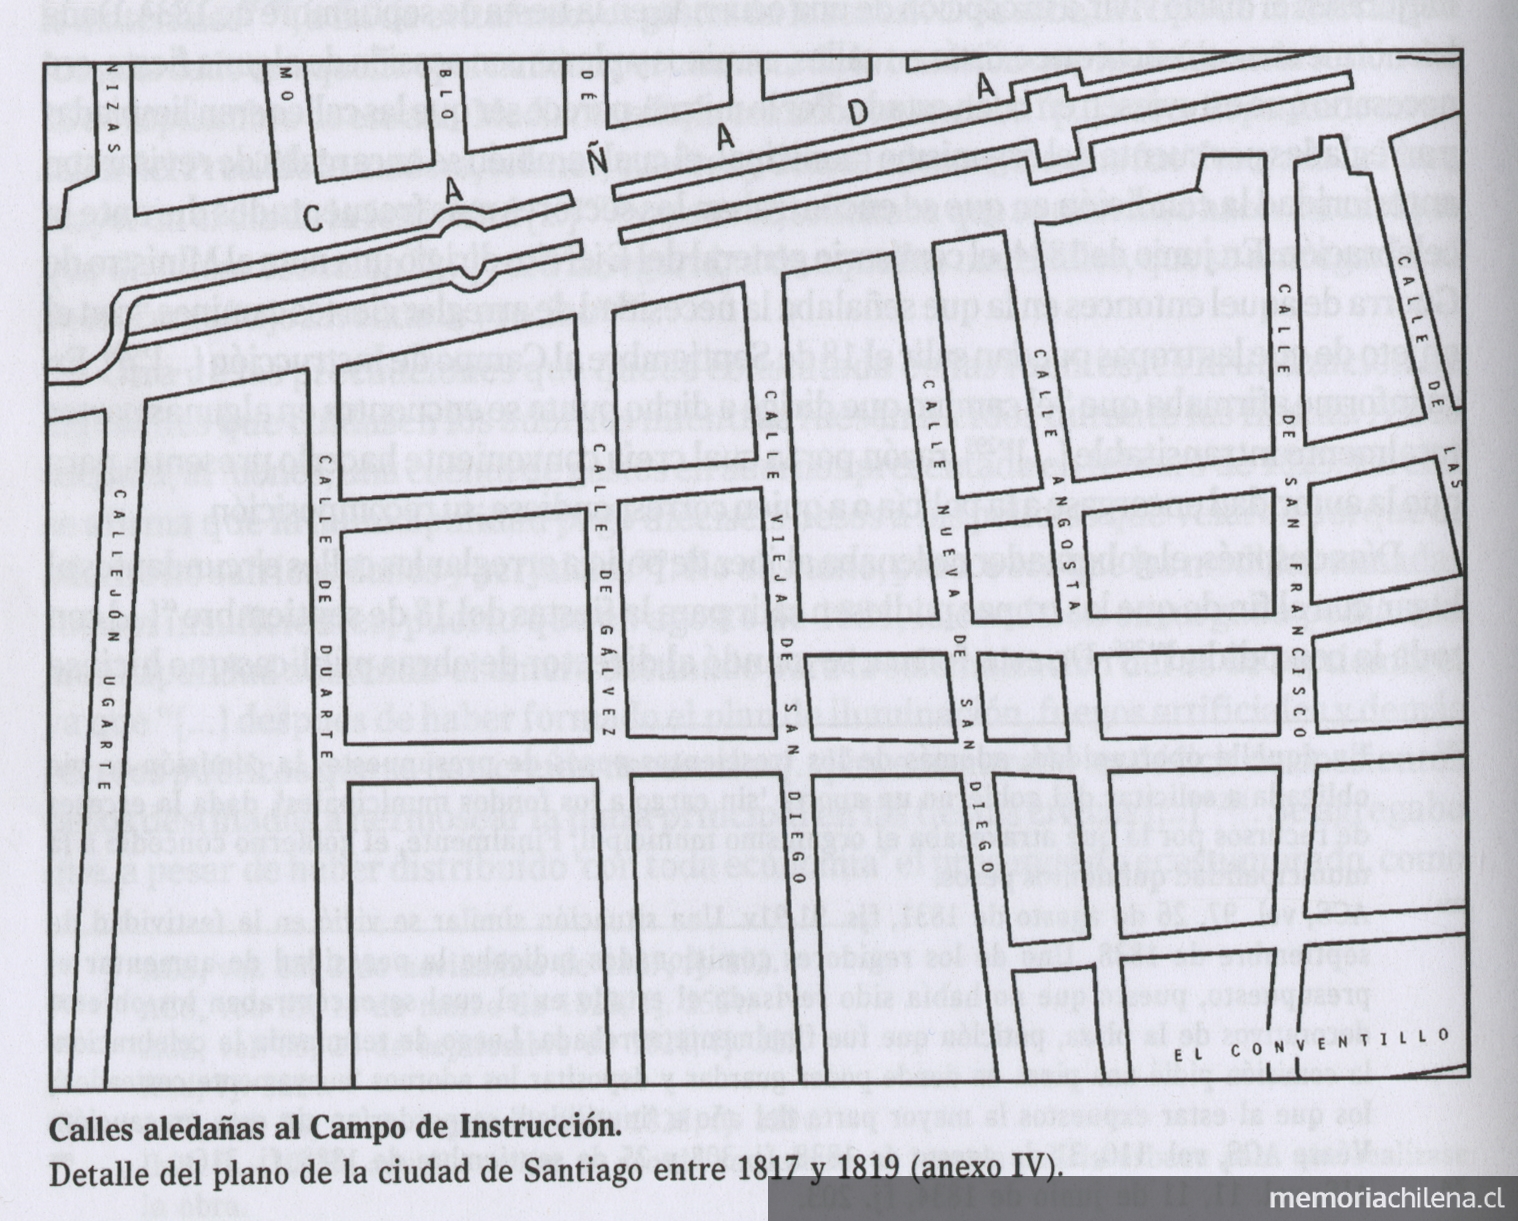 Calles aledañas al campo de instrucción, Santiago de Chile, 1817-1819